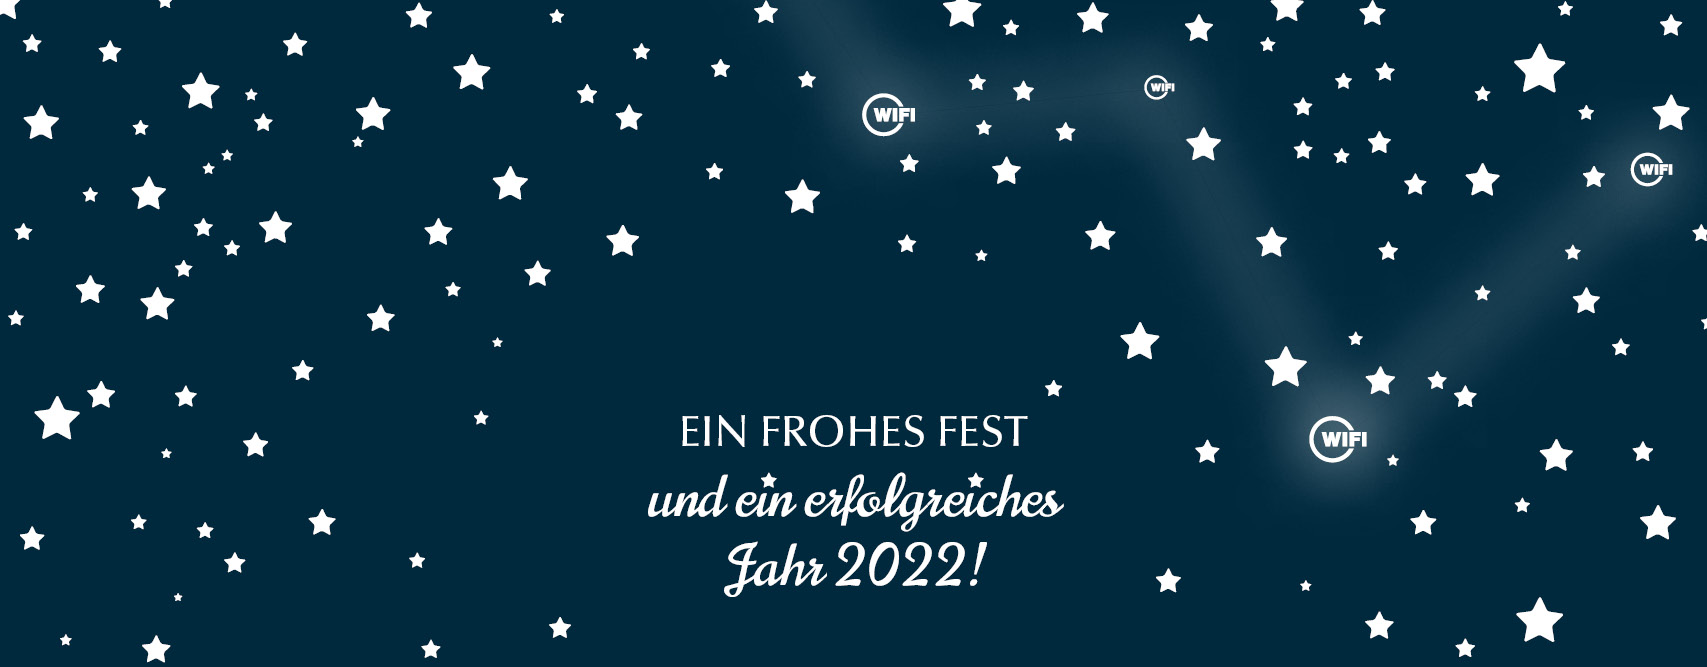 EIN FROHES FEST und ein erfolgreiches Jahr 2022!